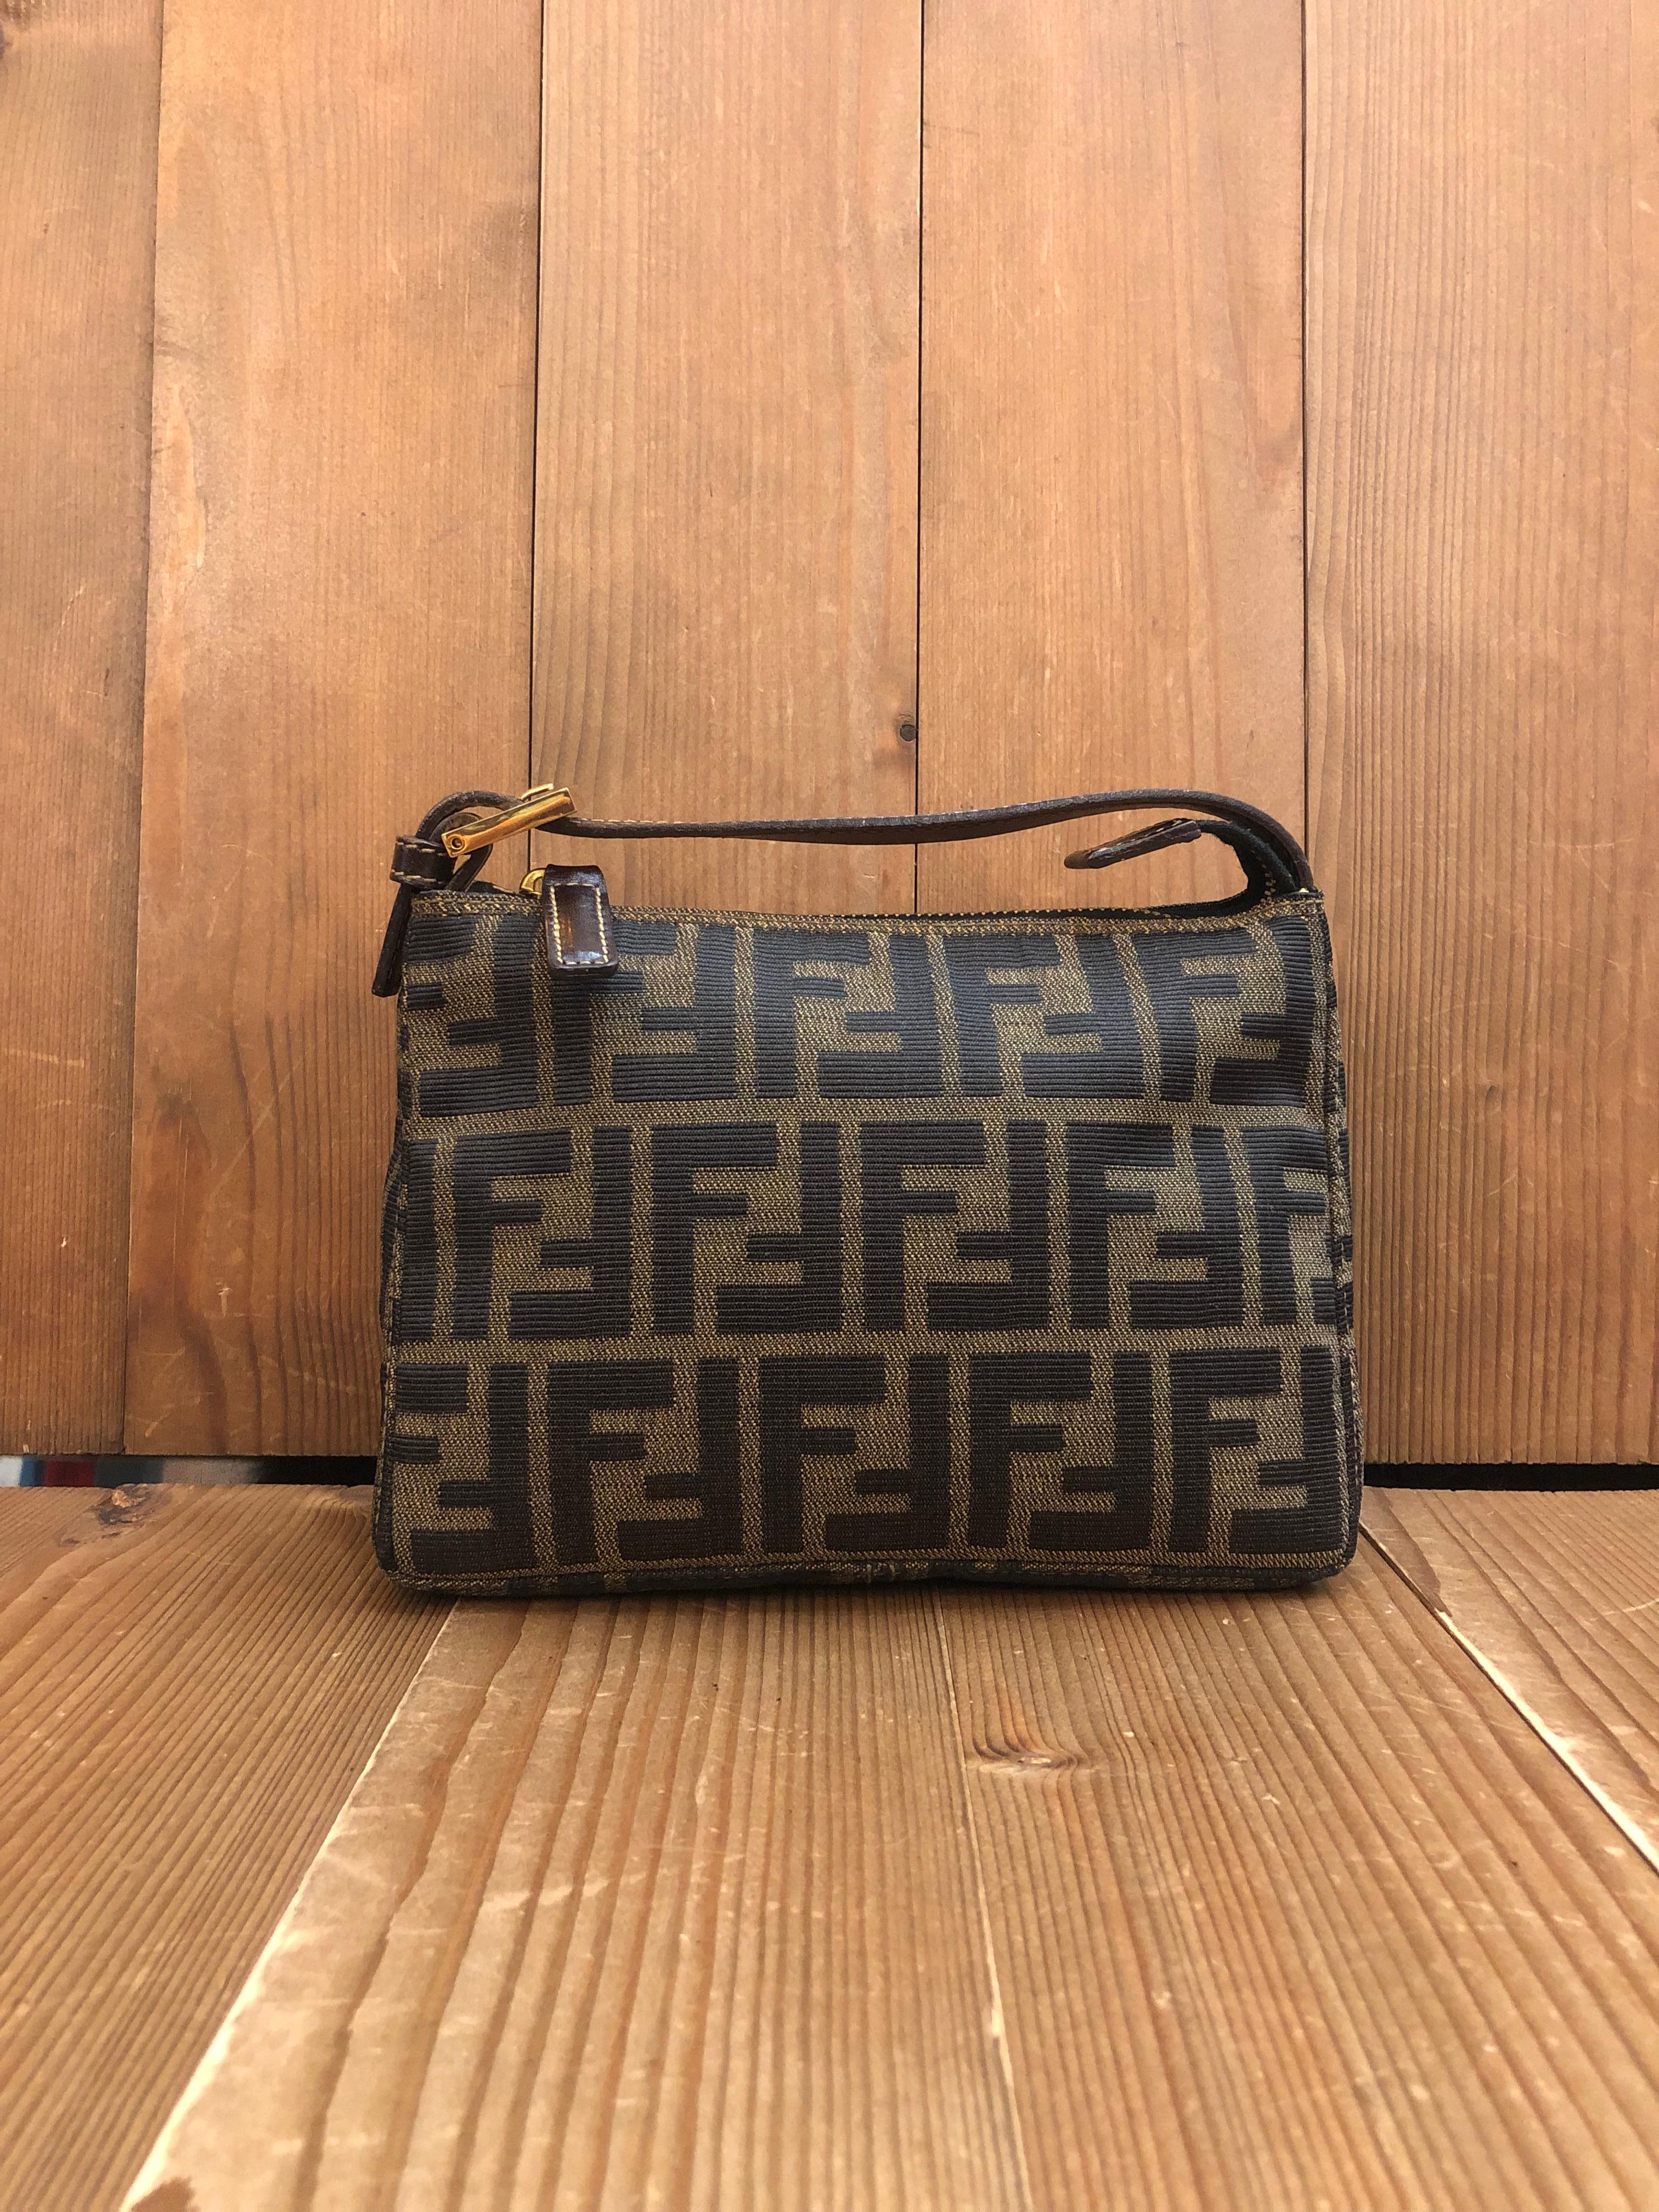 Diese Vintage-Handtasche von FENDI ist aus dem ikonischen Zucca-Jacquard von Fendi in Braun/Schwarz gefertigt und mit braunem Leder und goldfarbener Hardware versehen. Der Reißverschluss an der Oberseite führt zu einem neuen beigen Innenraum.